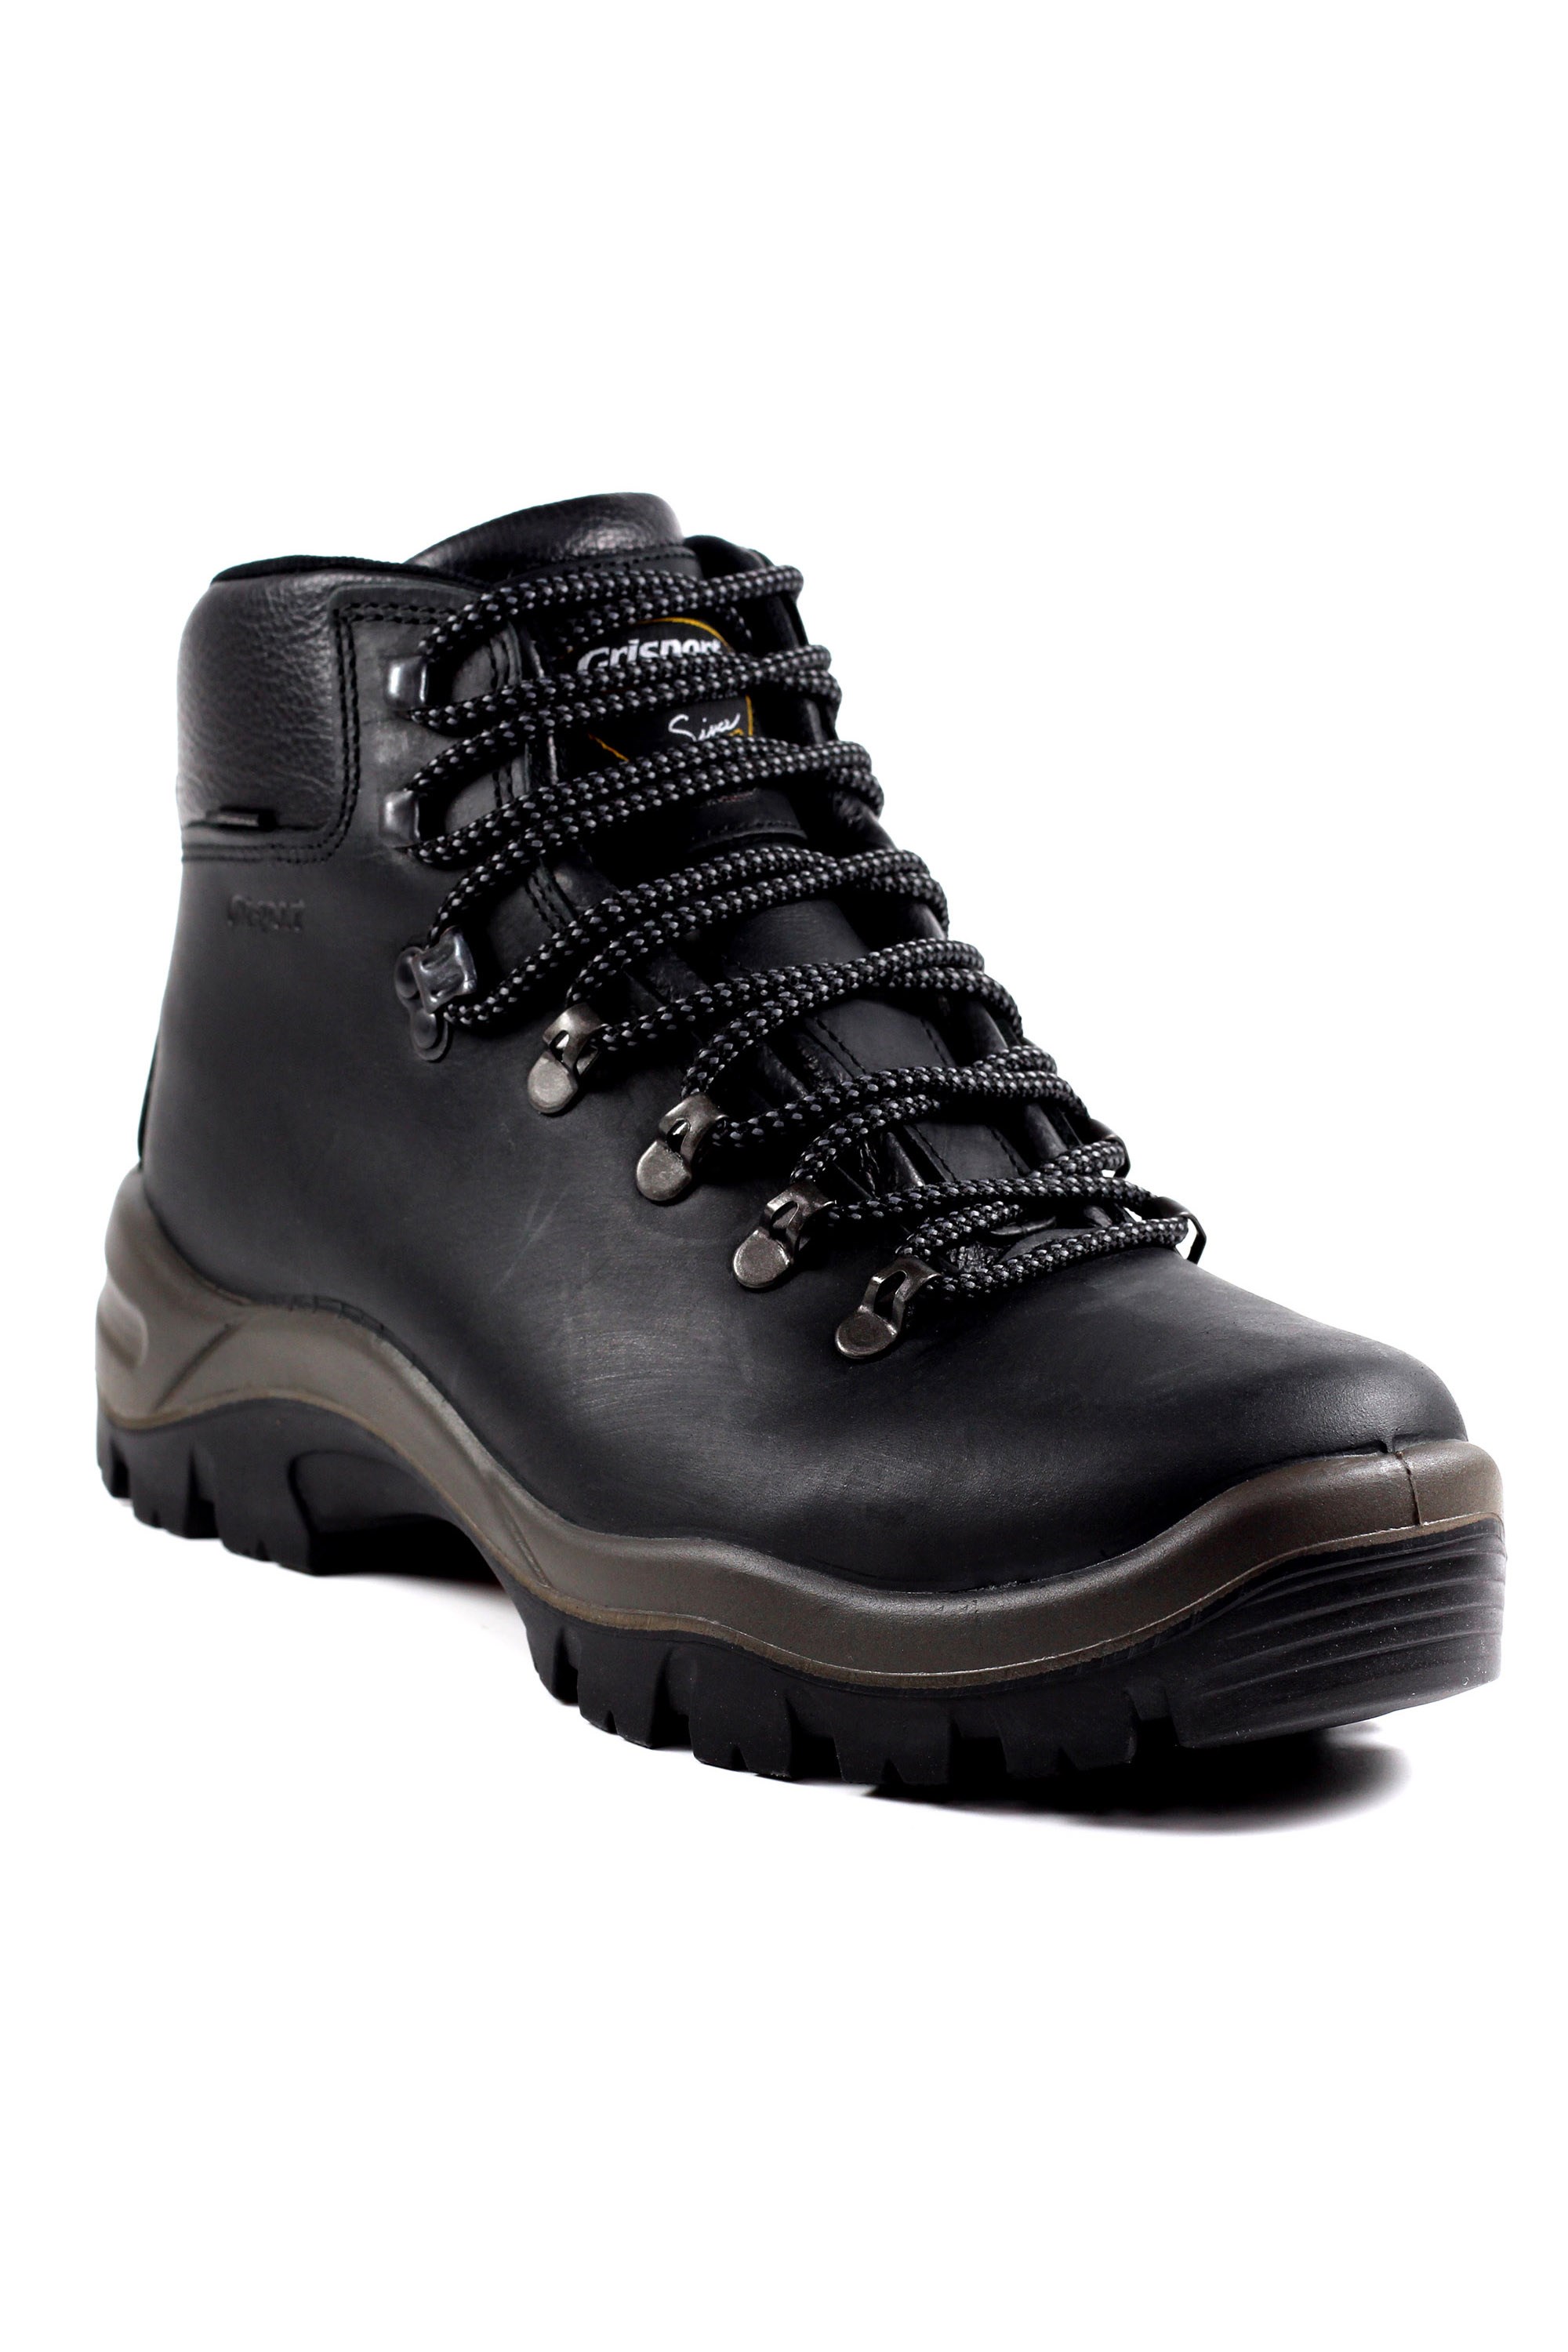 Peaklander Mens Waterproof Hiking Boots -